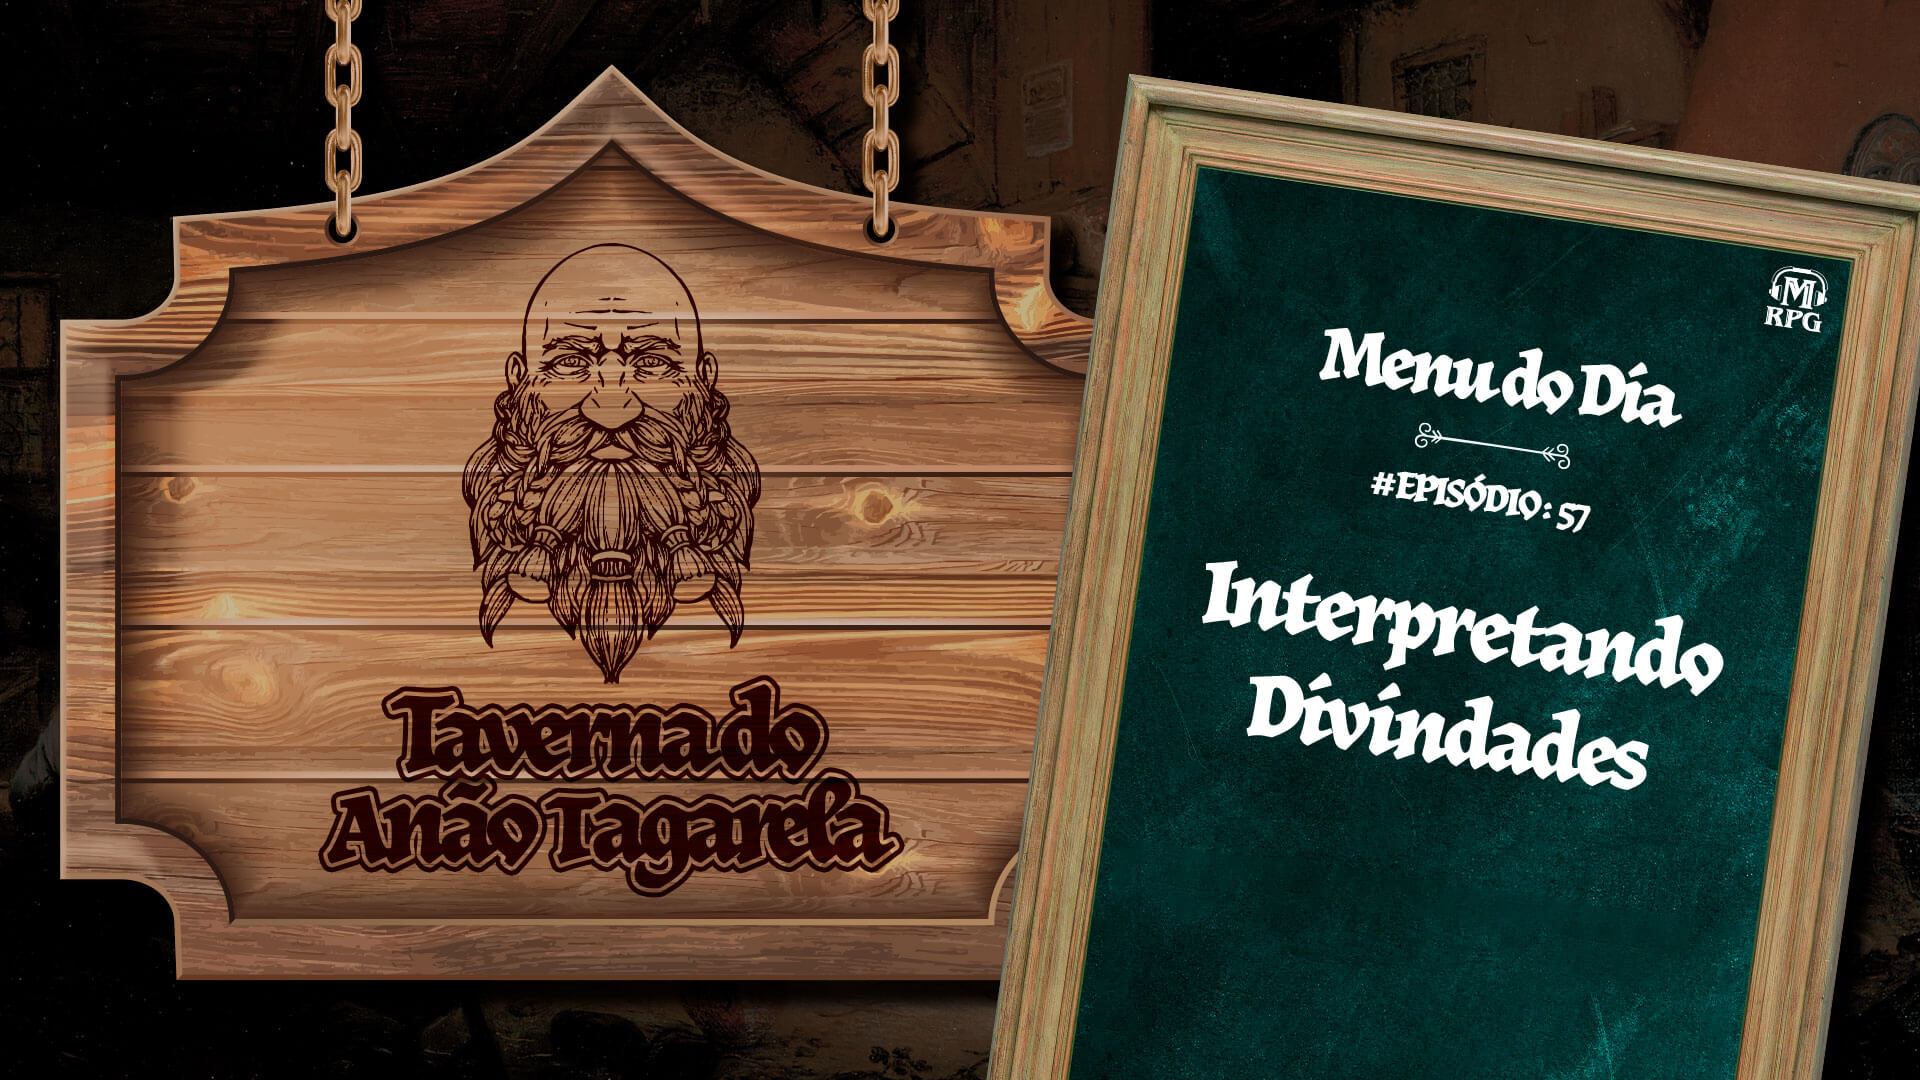 Interpretando Divindades – Taverna do Anão Tagarela #57